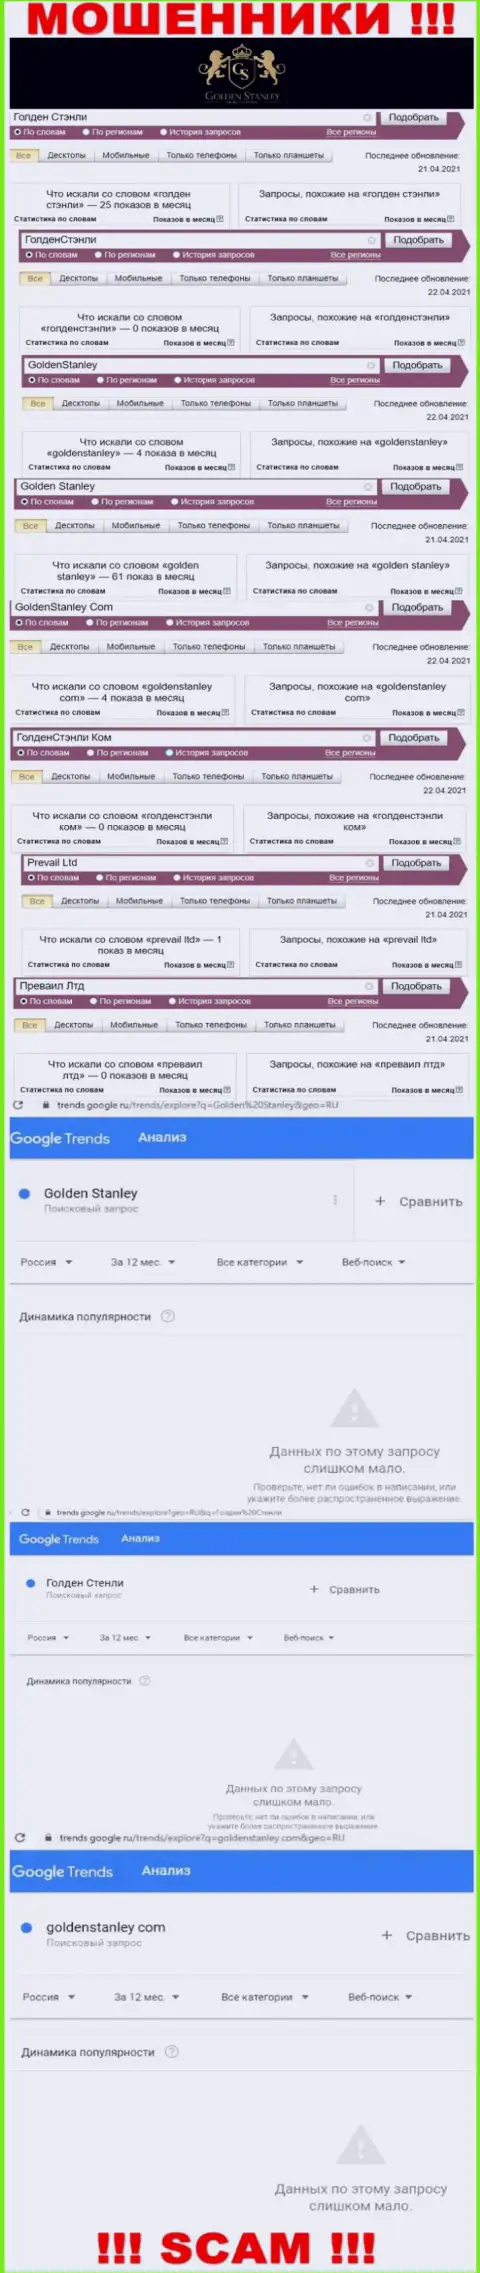 Статистика internet запросов в поисковиках относительно мошенников GoldenStanley